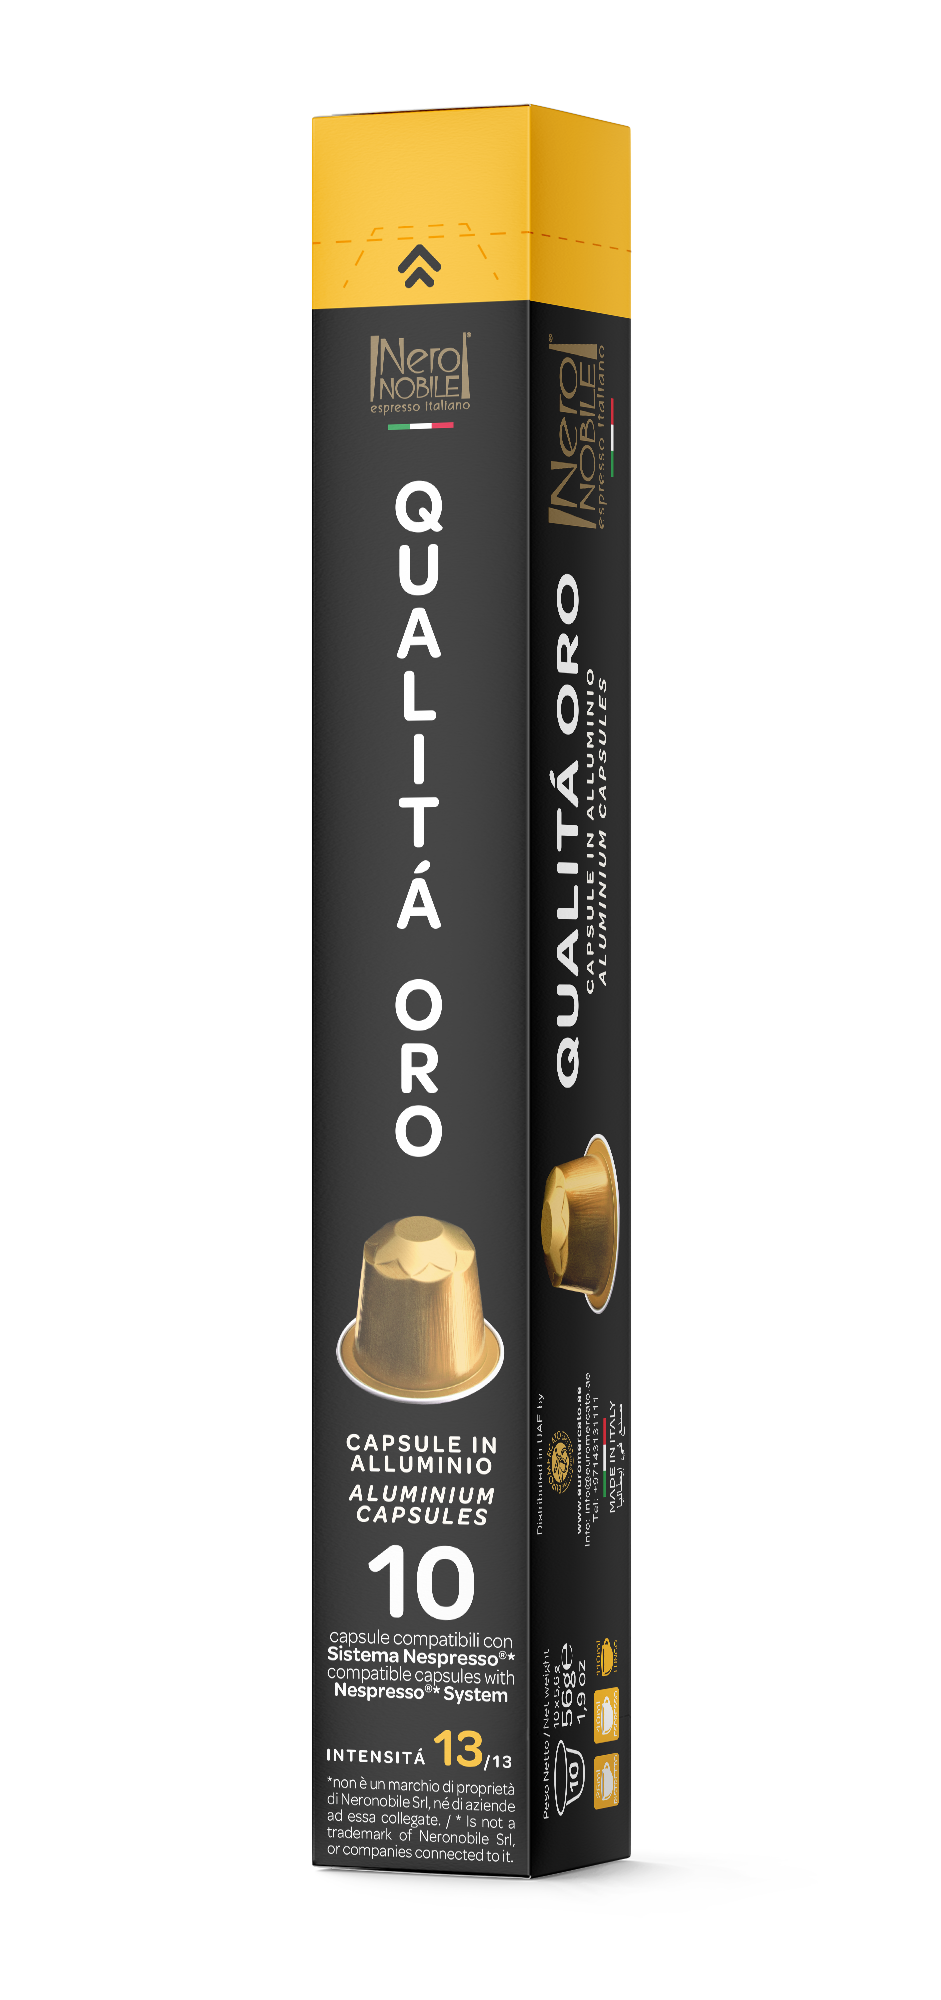 Кофе Neronobile Qualita Oro 10 капсул. Интенсивность 13